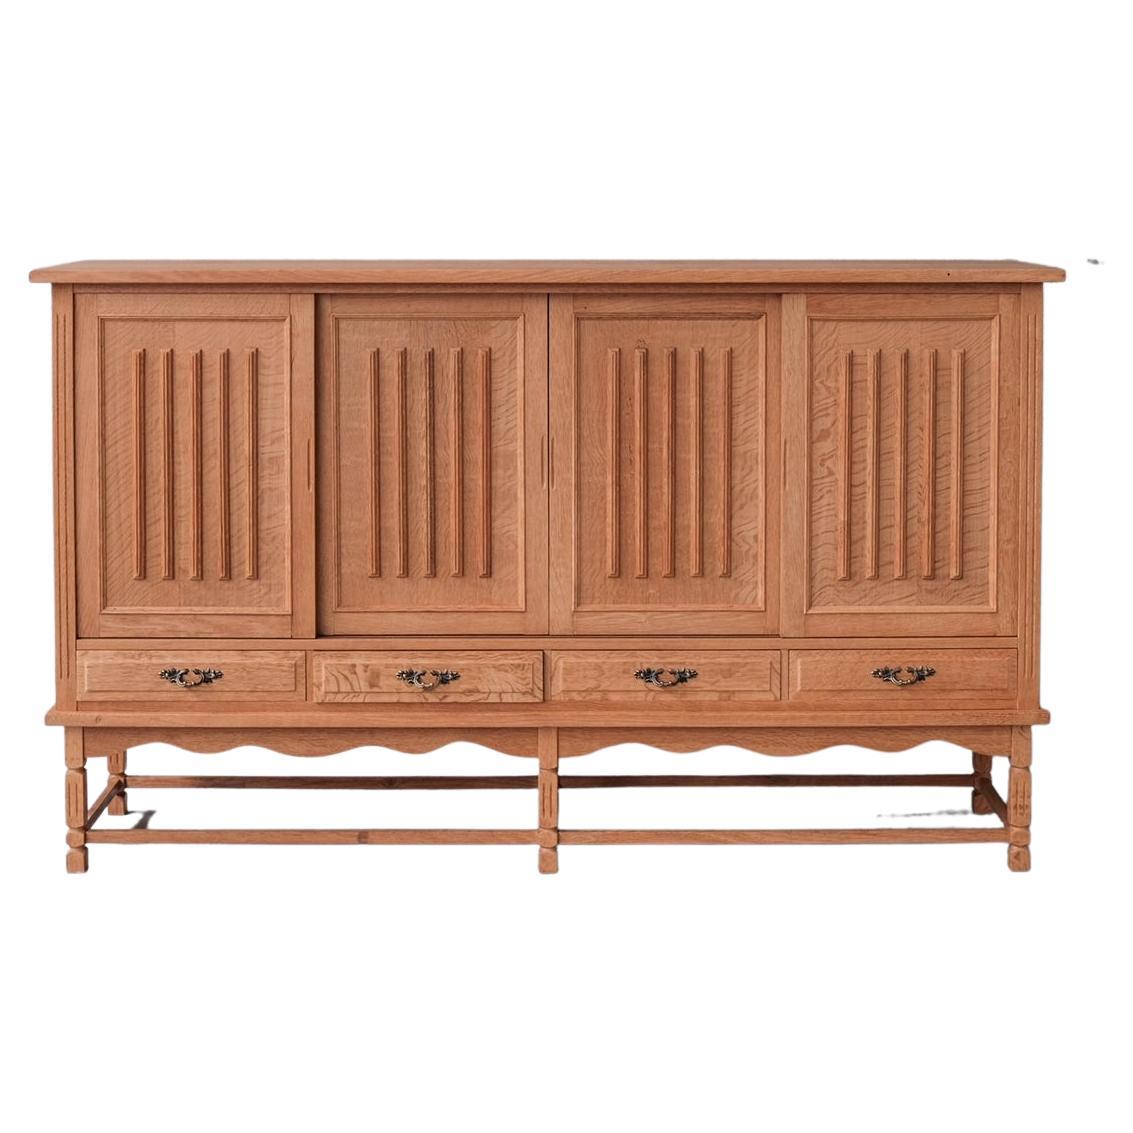 Oak Mid-Century Danish Cabinet/Sideboard in style of Kjaernulf For Sale